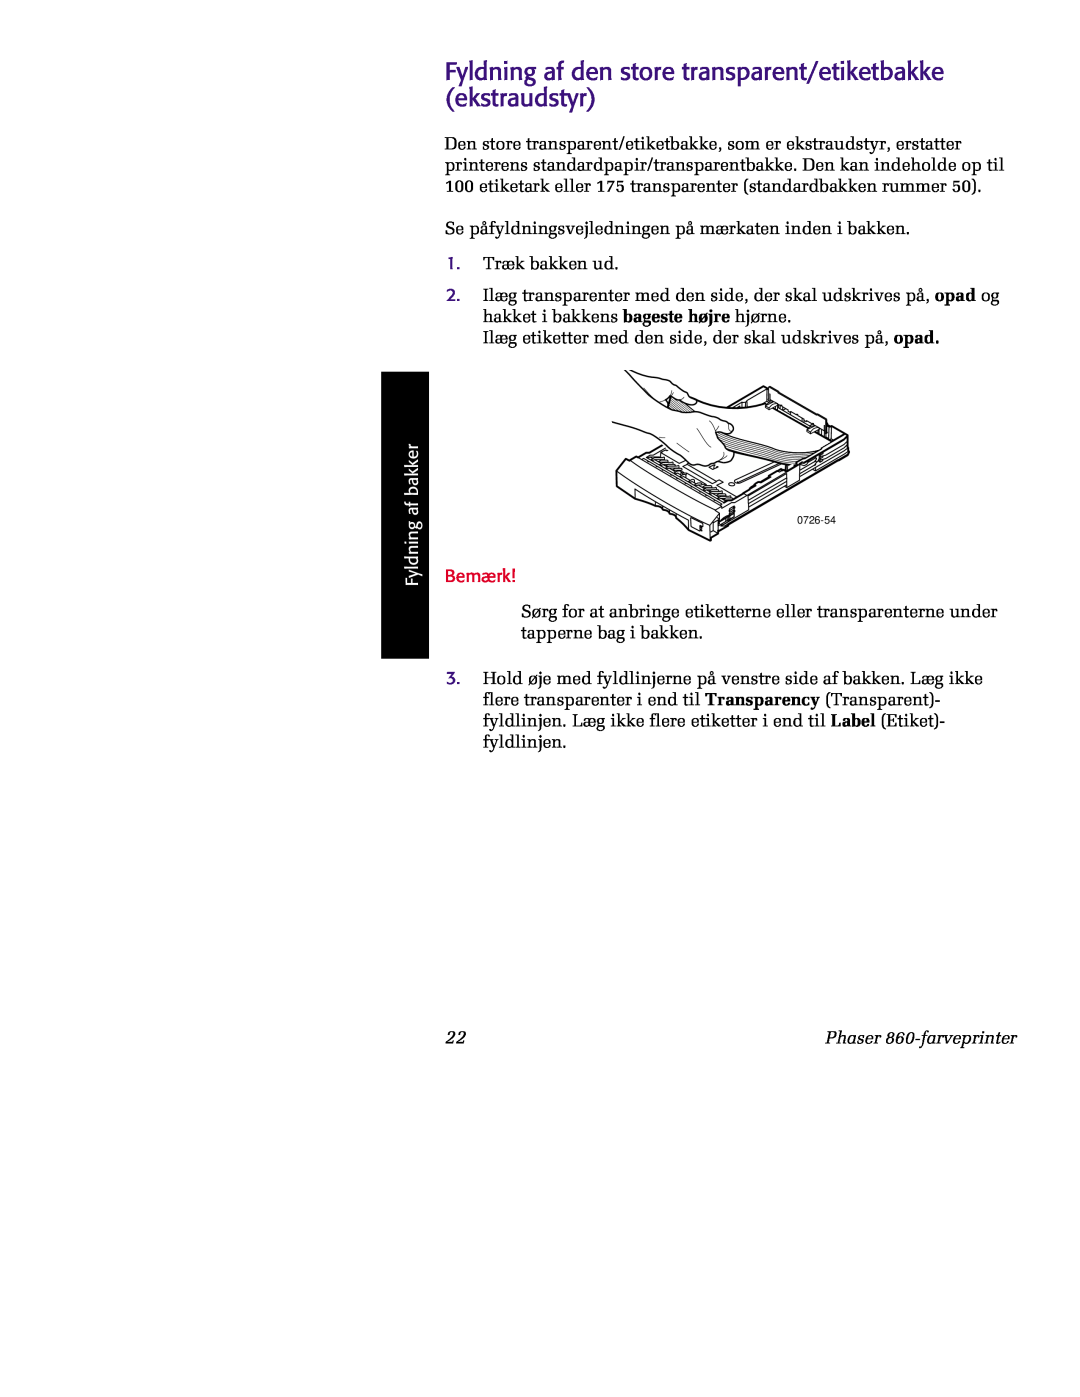 Tektronix 860 manual Fyldning af den store transparent/etiketbakke ekstraudstyr, Fyldning af bakker, Bemærk 